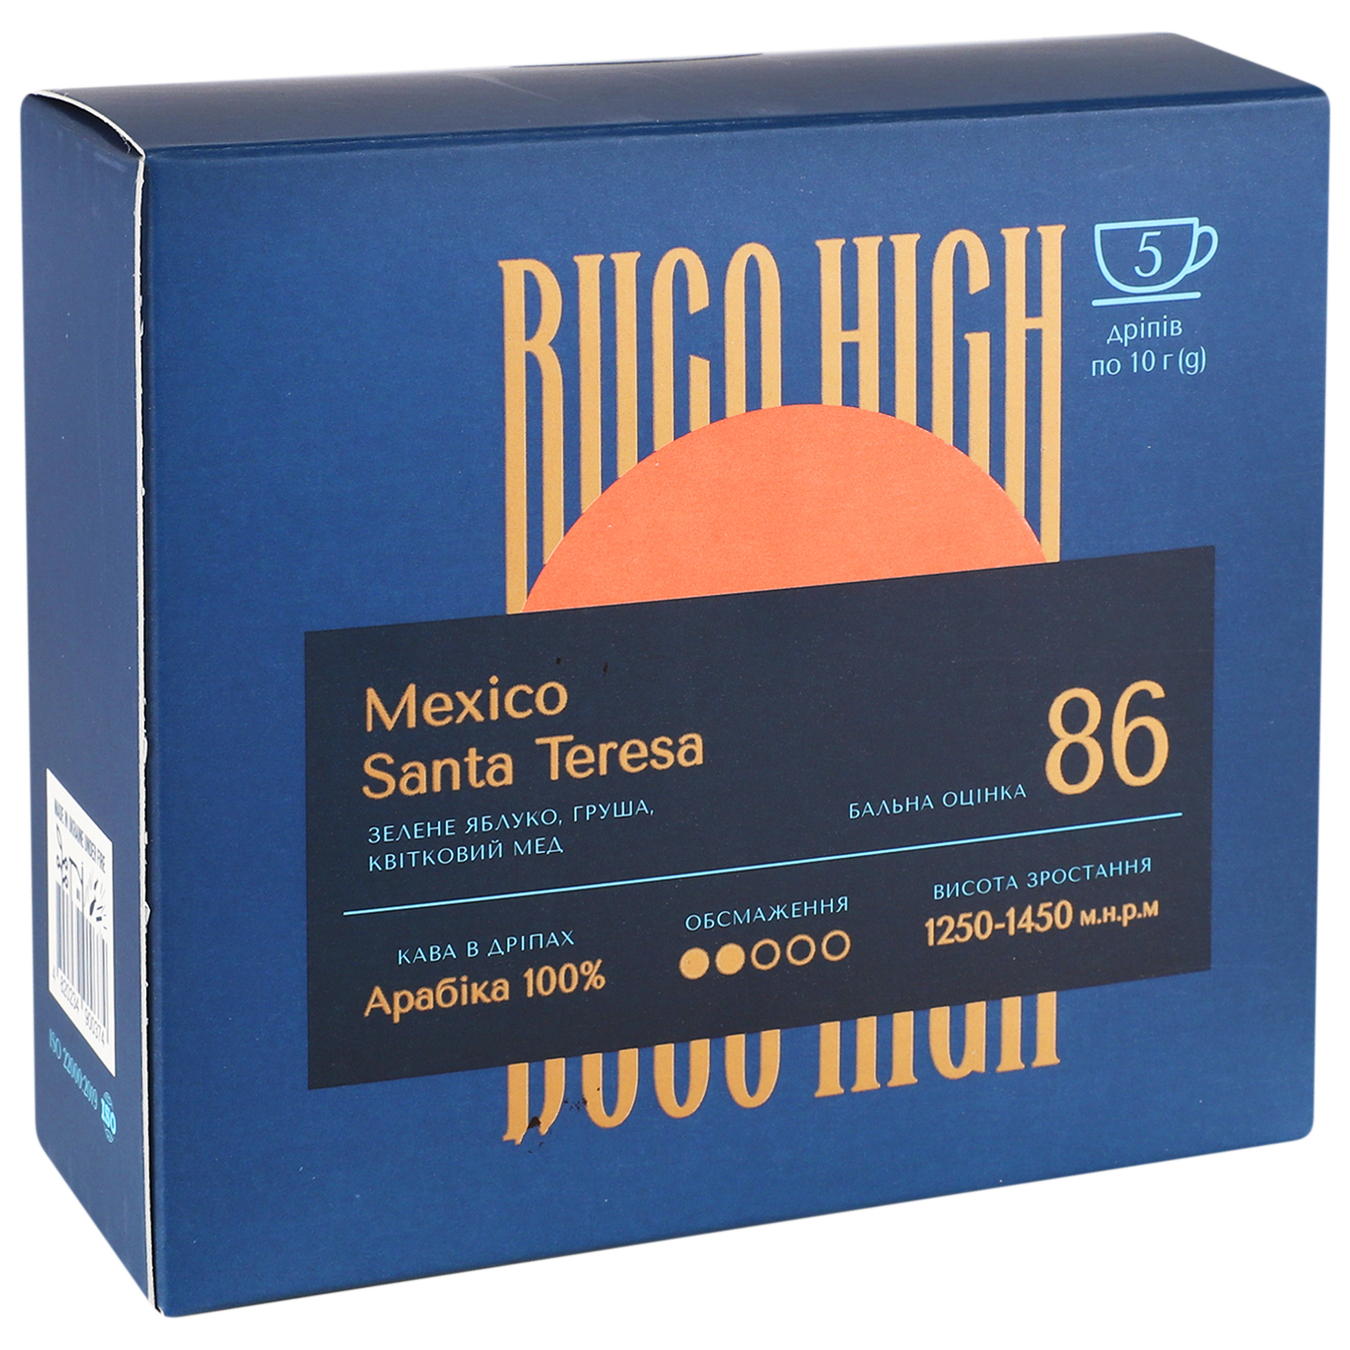 Mexico Santa Teresa Buco High (coffee in drip) 5*10g 2